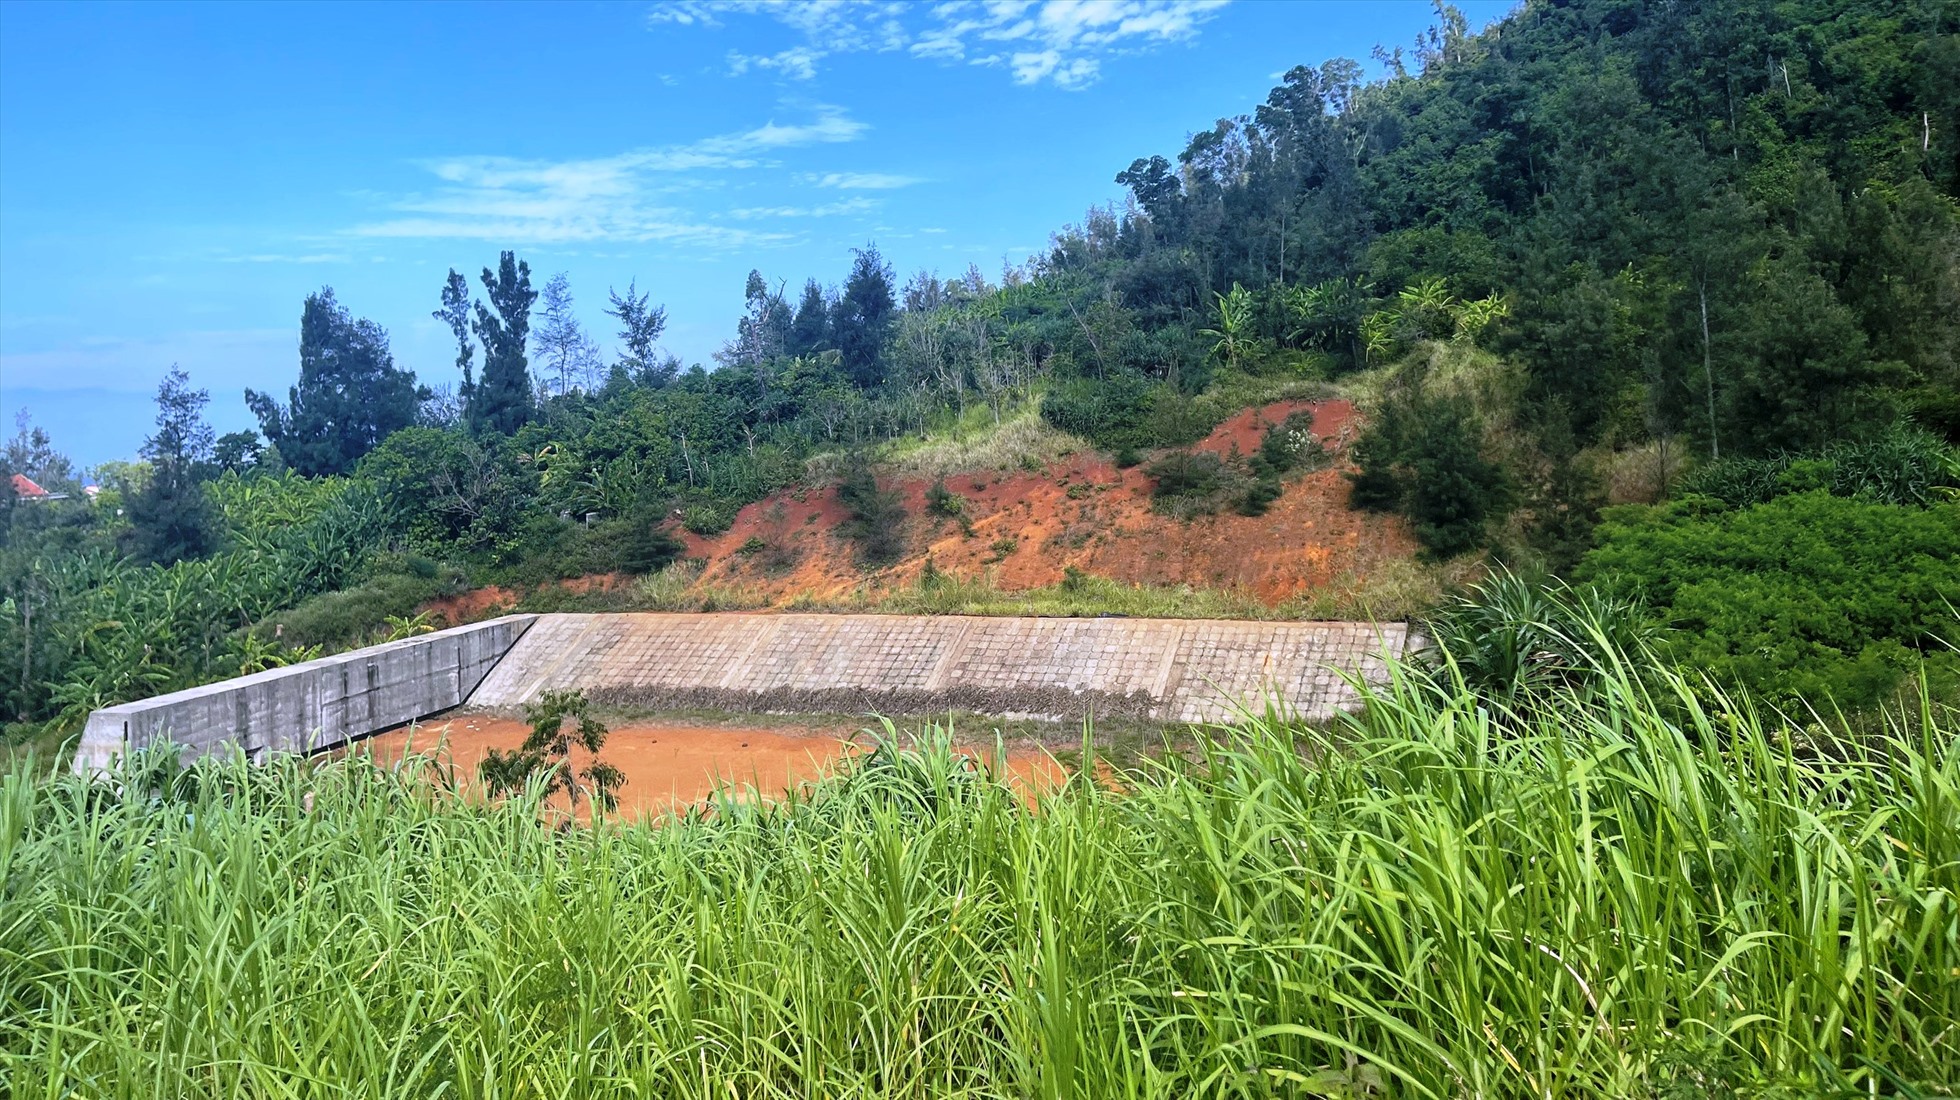 Dự án hệ thống trữ nước sinh hoạt kết hợp tưới tiết kiệm cho nông nghiệp đảo Lý Sơn. Ảnh: Ngọc Viên